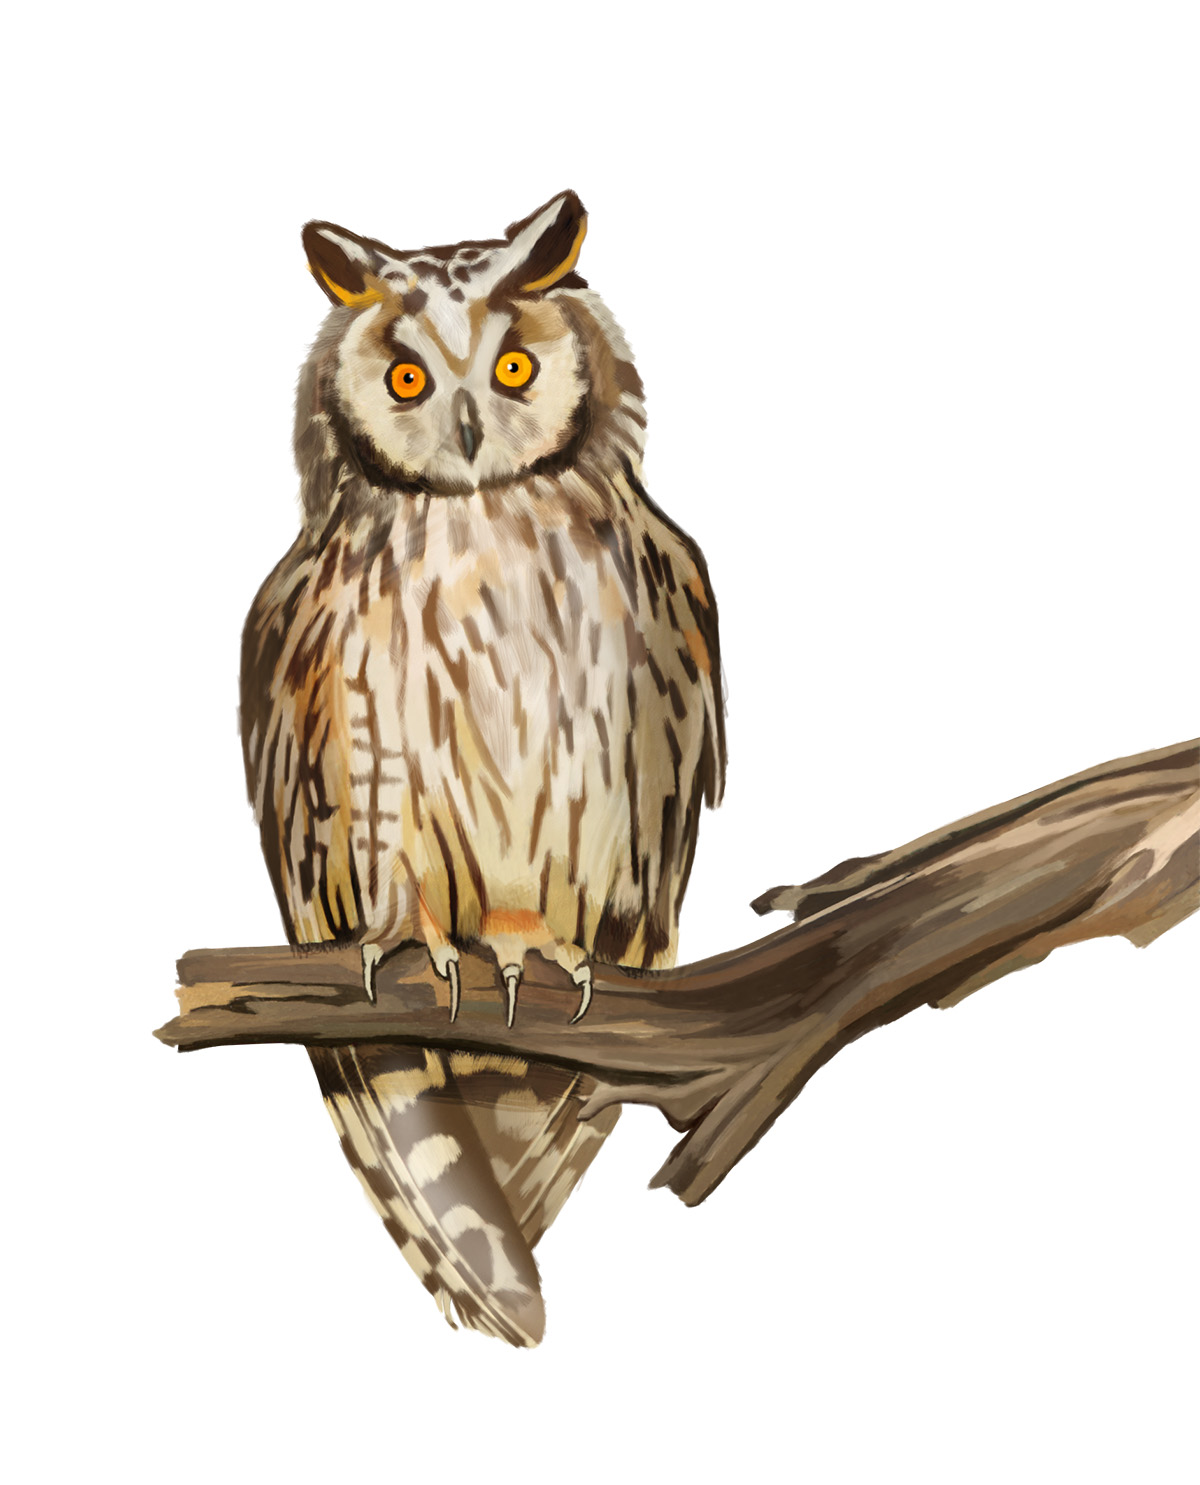 long-eared owl illustration